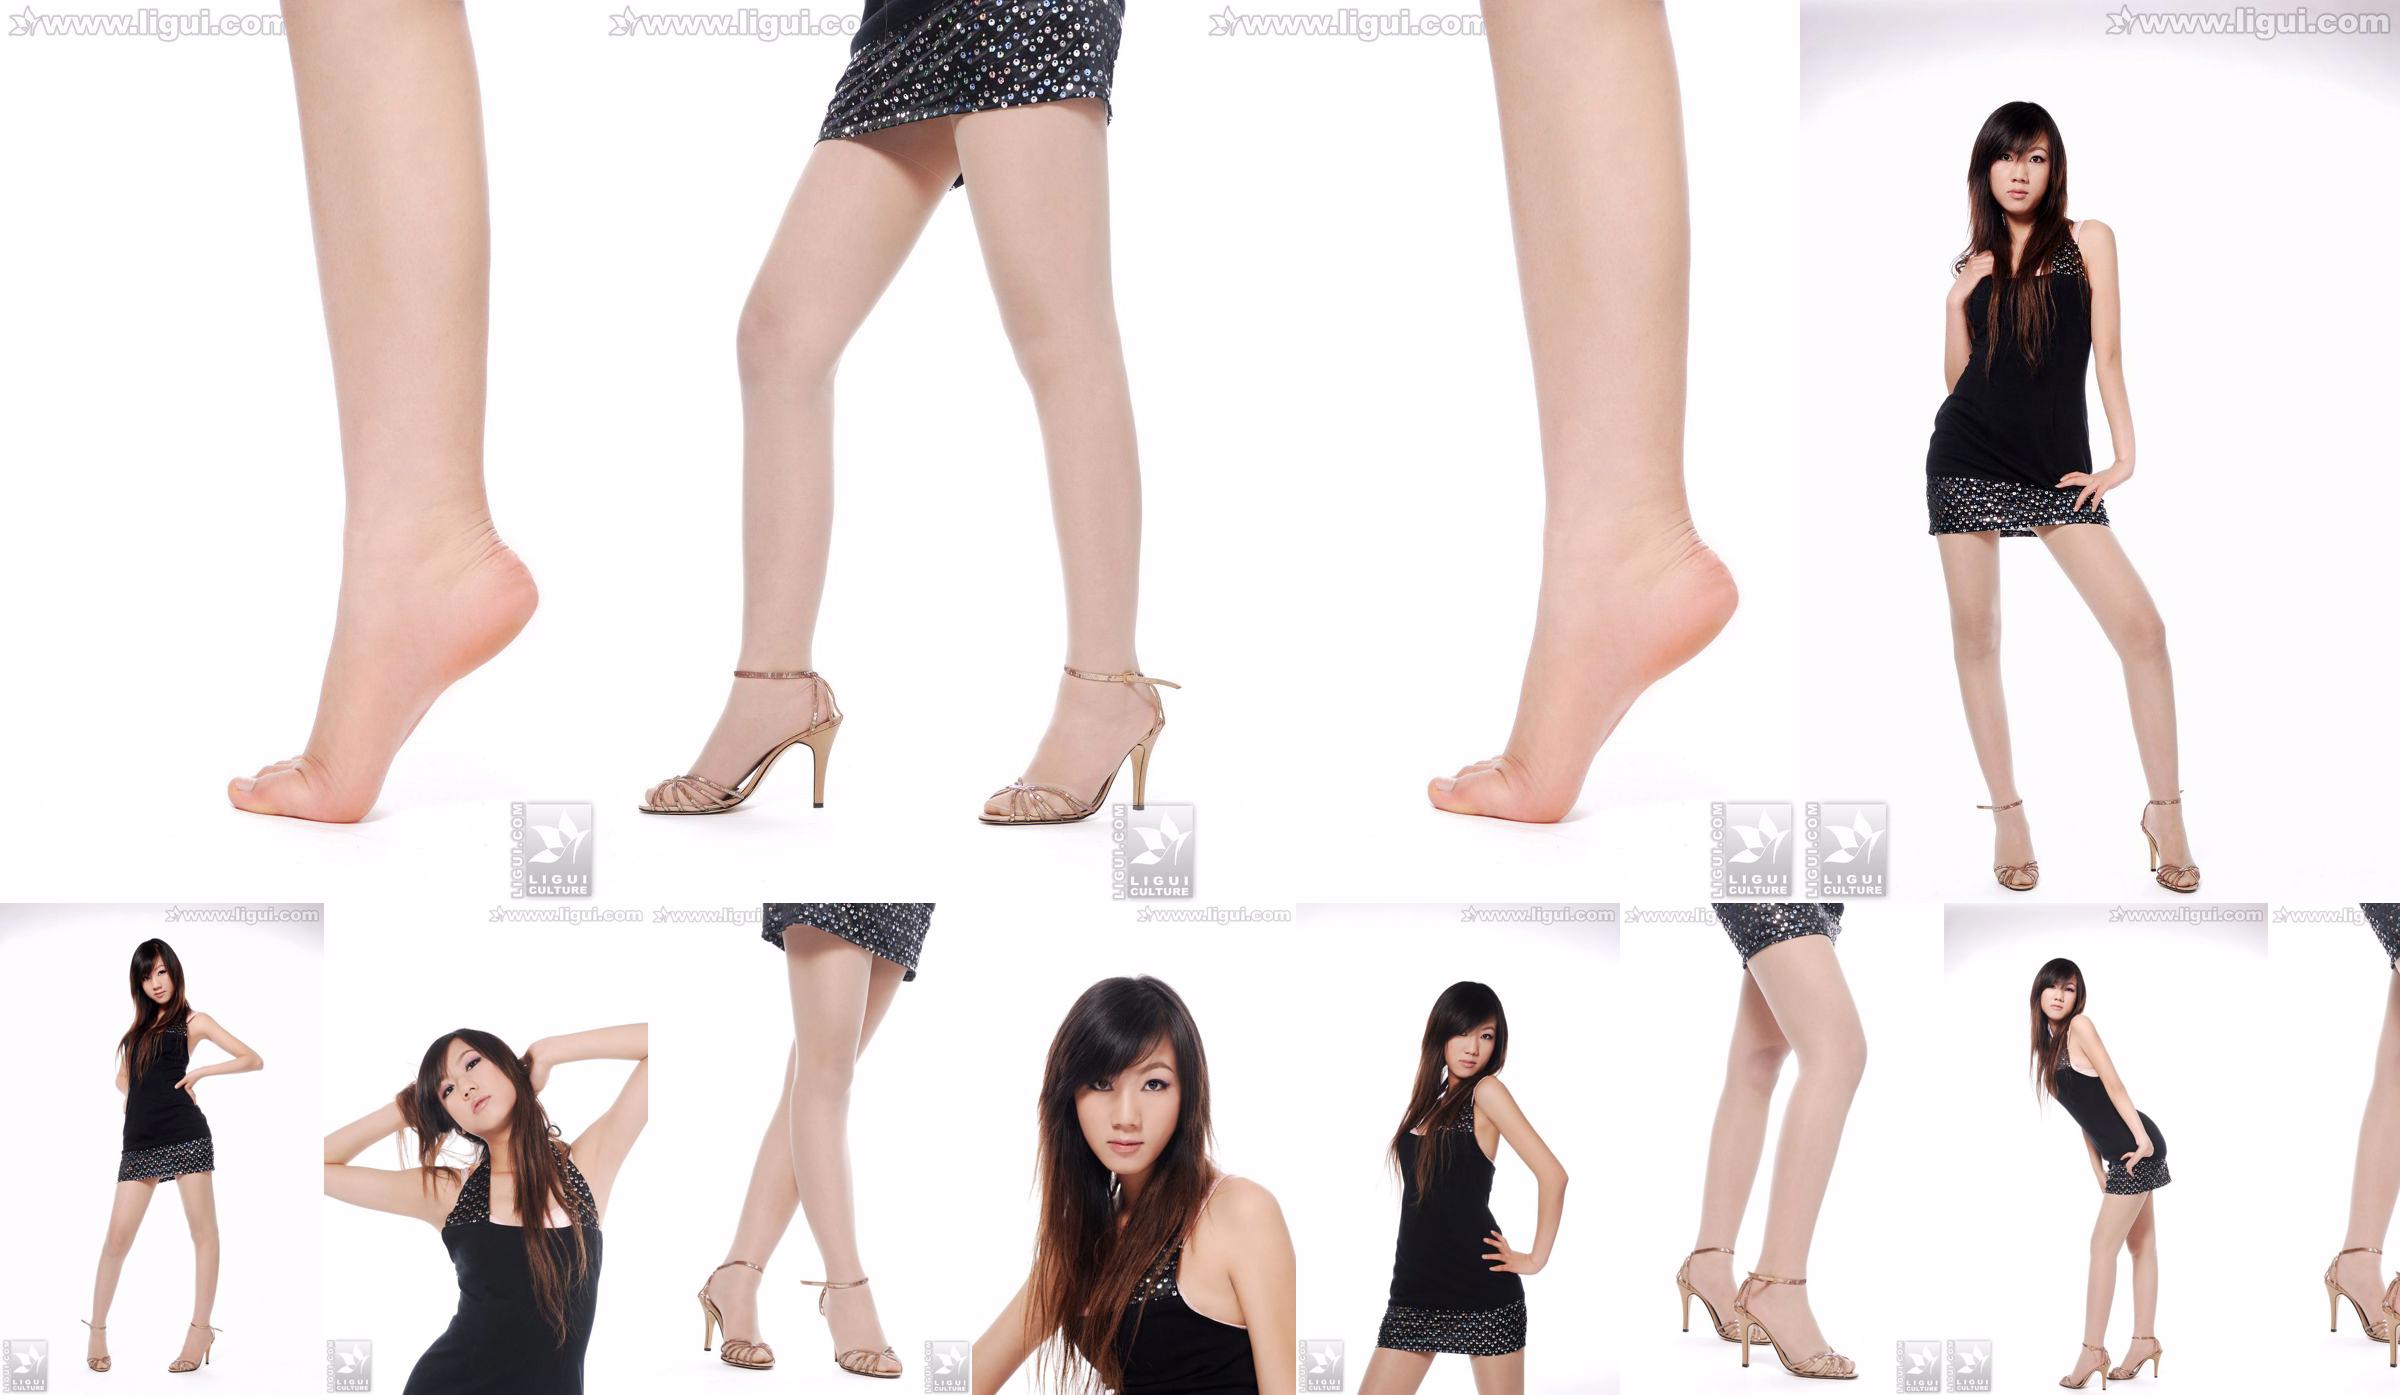 Người mẫu Sheng Chao "Giày cao gót ngọc xinh show mới" [Sheng LiGui] Ảnh chụp chân dài ngọc nữ xinh đẹp No.cf552d Trang 1